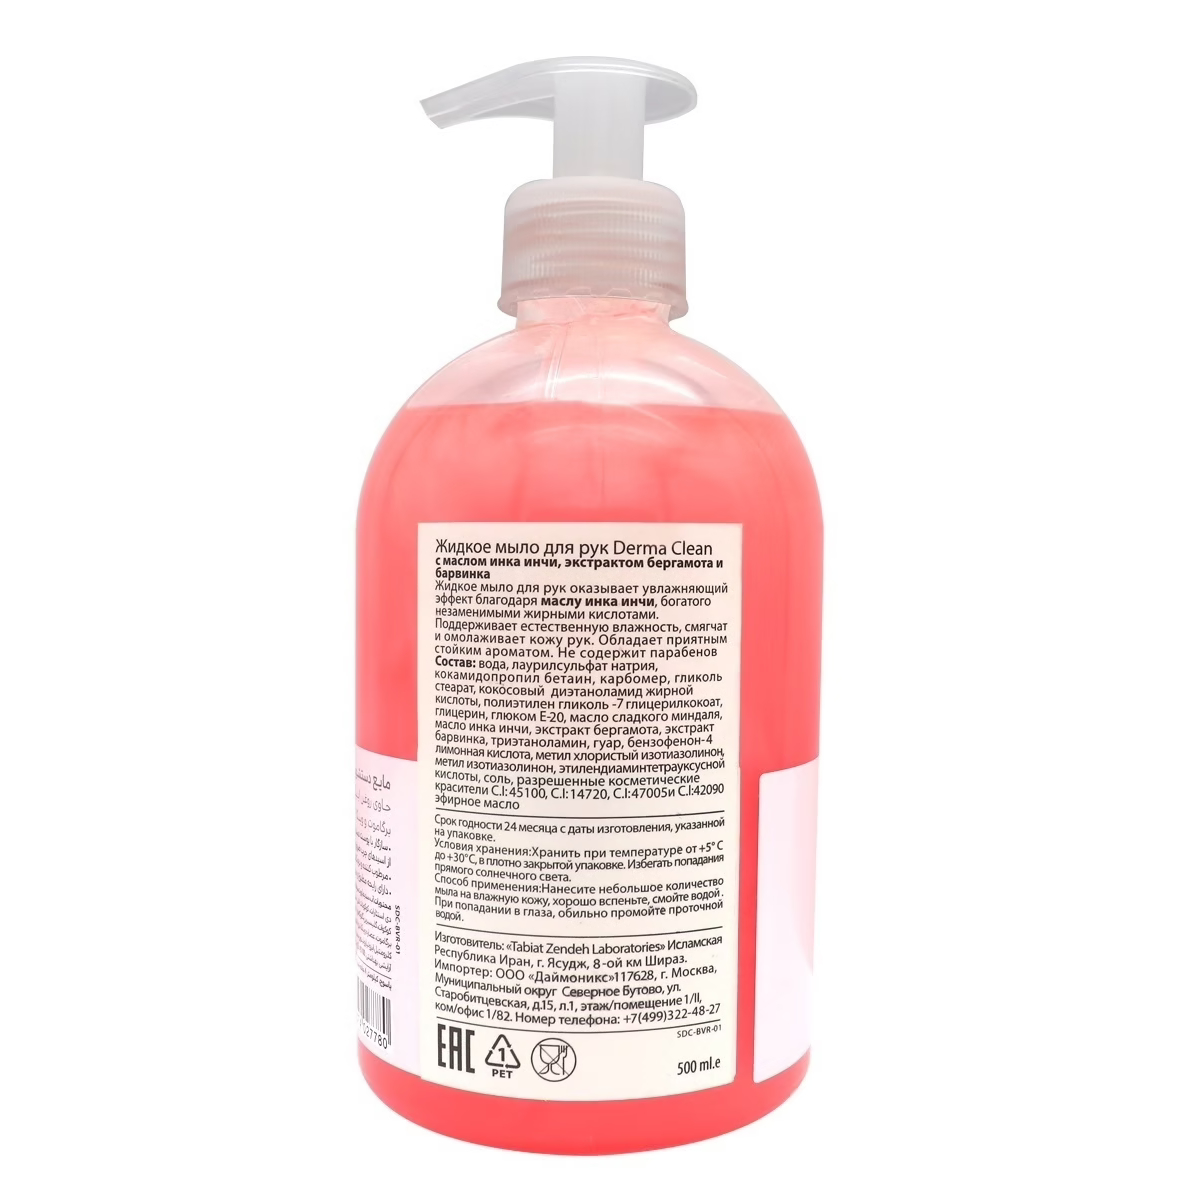 Мыло жидкое для рук Derma clean с экстрактом бергамота и барвинка, 500 мл - фото 2